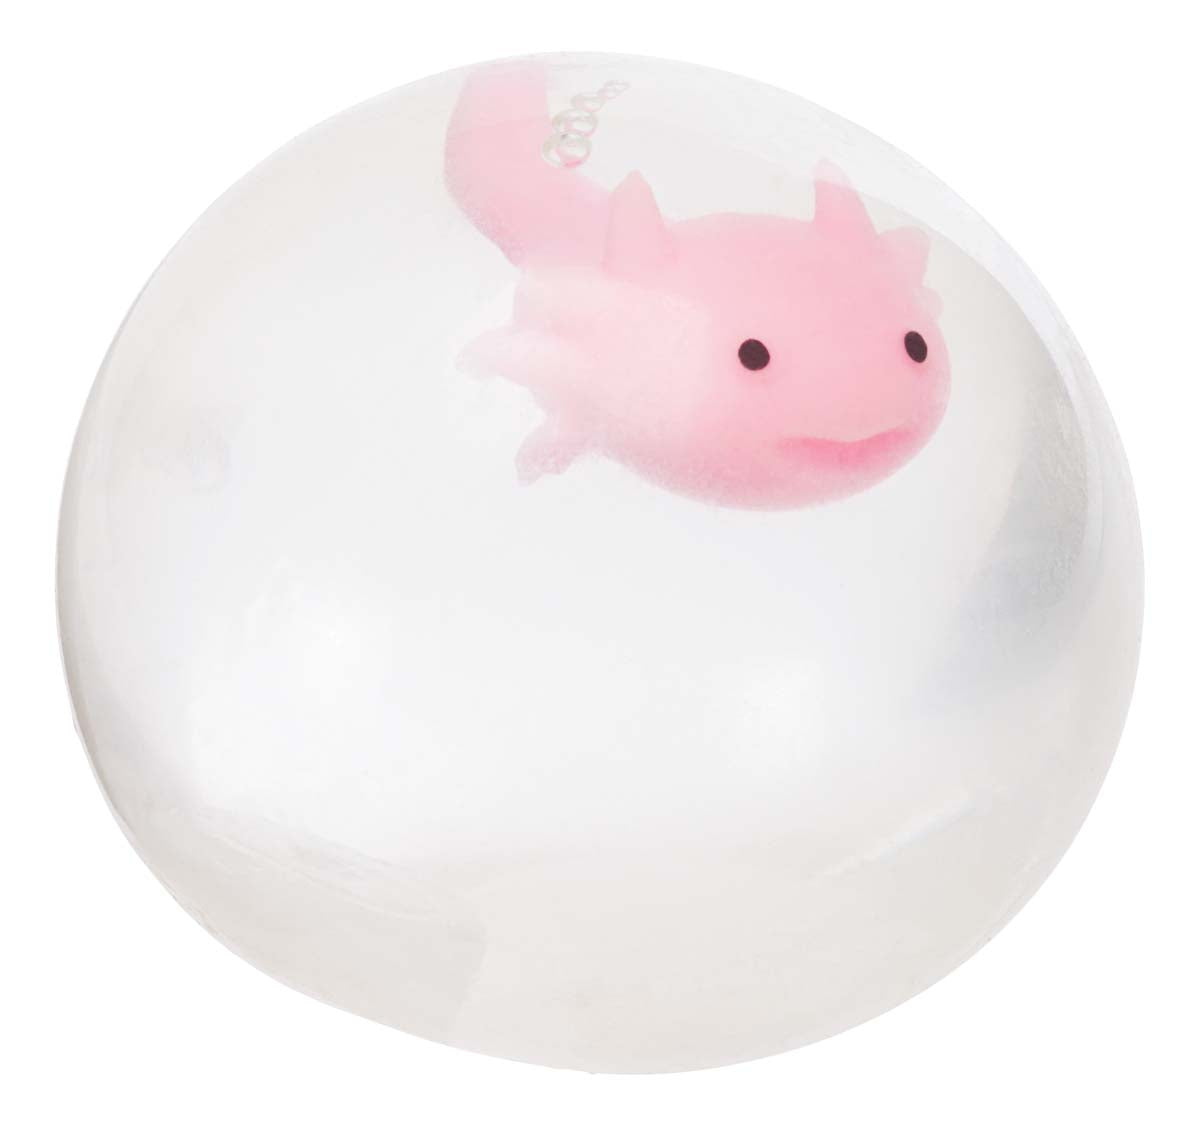 Toysmith Axolotl Squeeze Ball